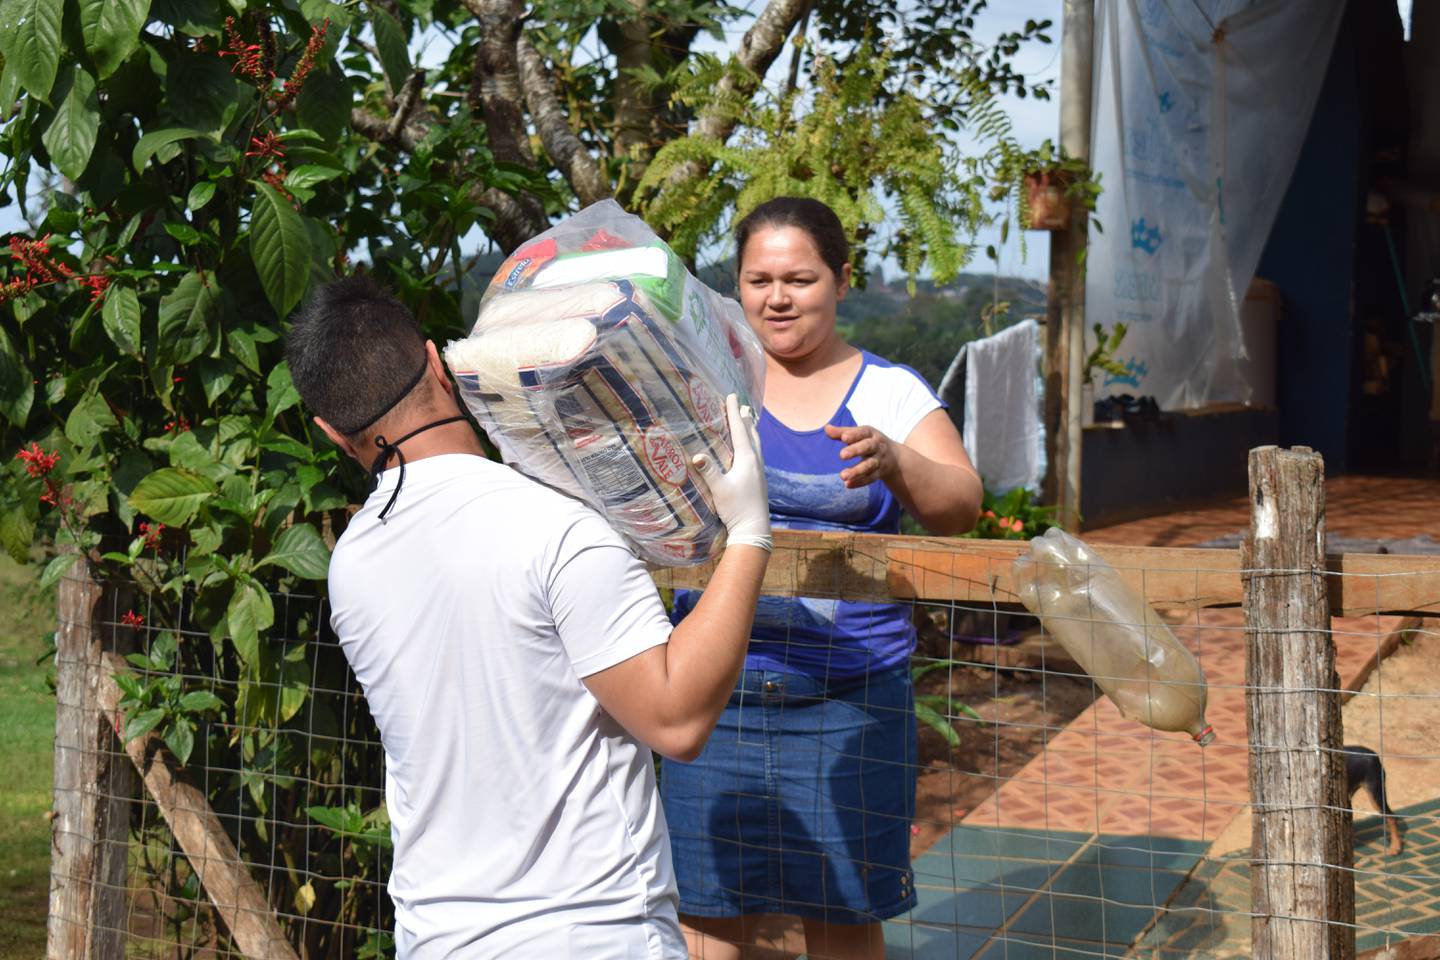 Central Única das Favelas, por meio do projeto Mães da Favela, distribui alimentos às mães carentes.dfd